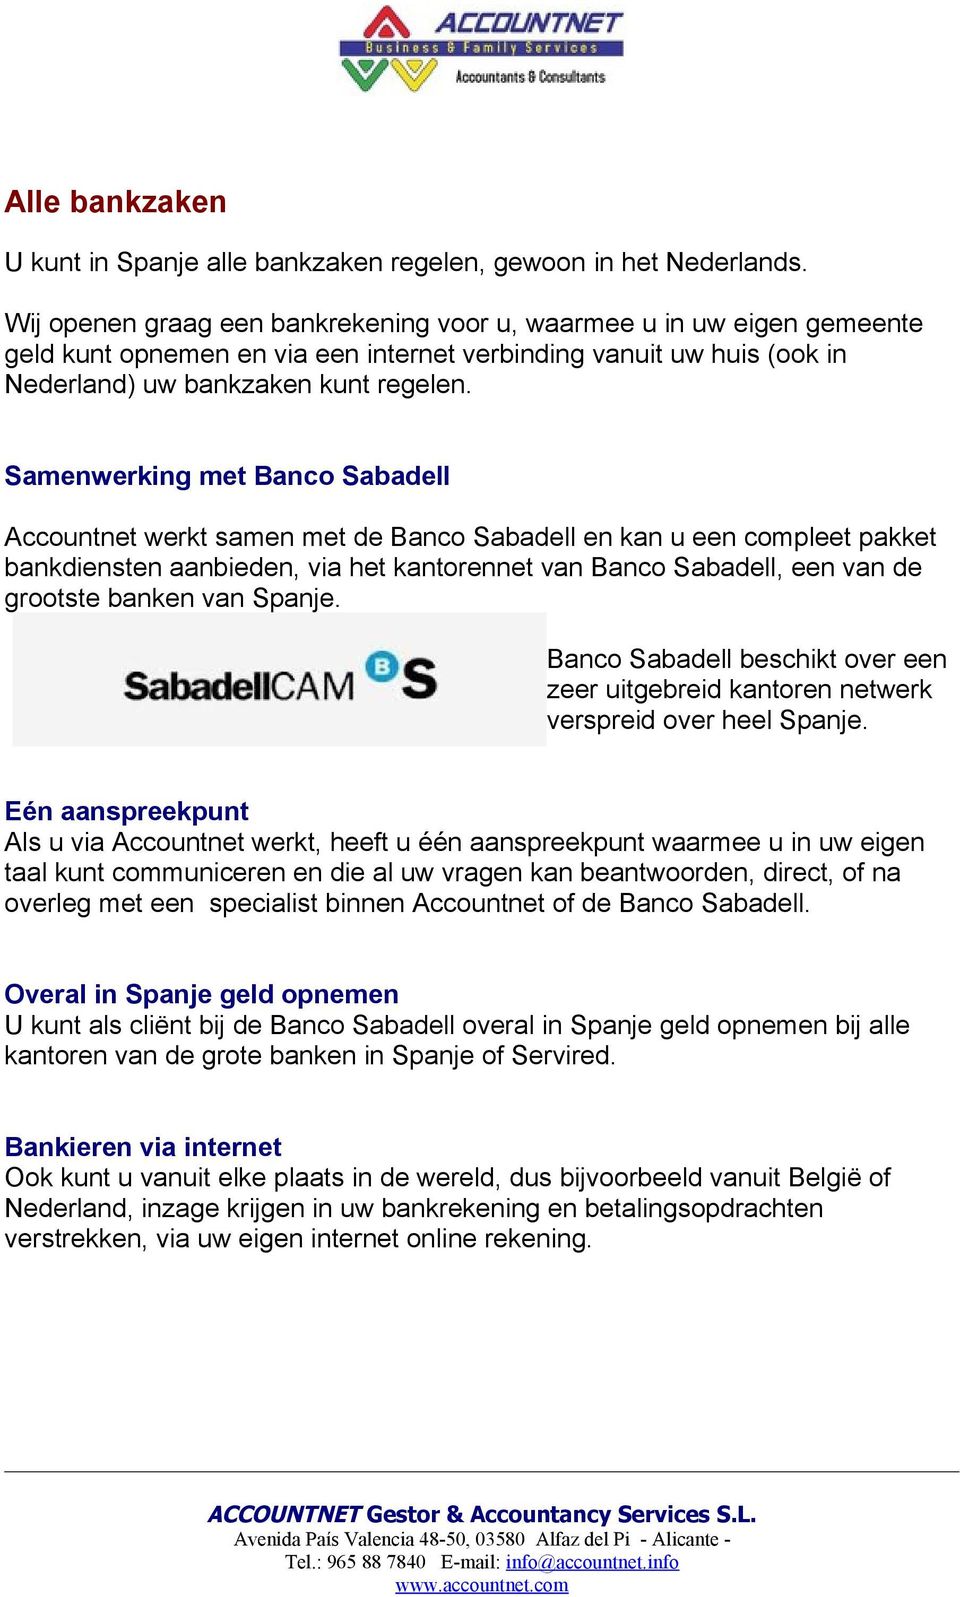 Samenwerking met Banco Sabadell Accountnet werkt samen met de Banco Sabadell en kan u een compleet pakket bankdiensten aanbieden, via het kantorennet van Banco Sabadell, een van de grootste banken